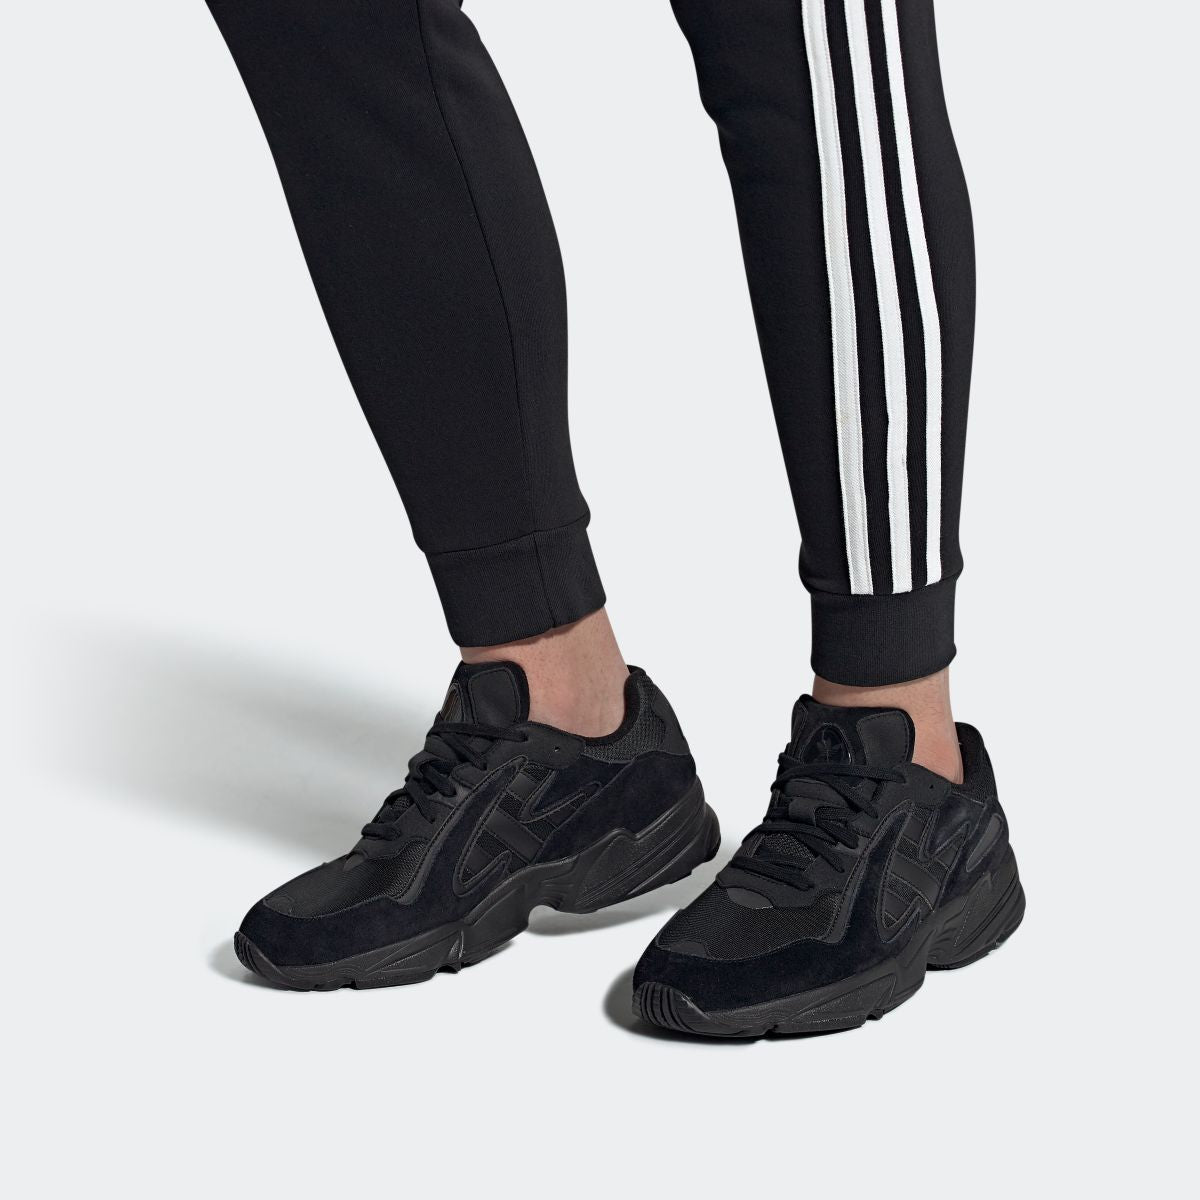 Adidas Yung 96 Chasm Black Ee7239 Ltd Sneakers Wear